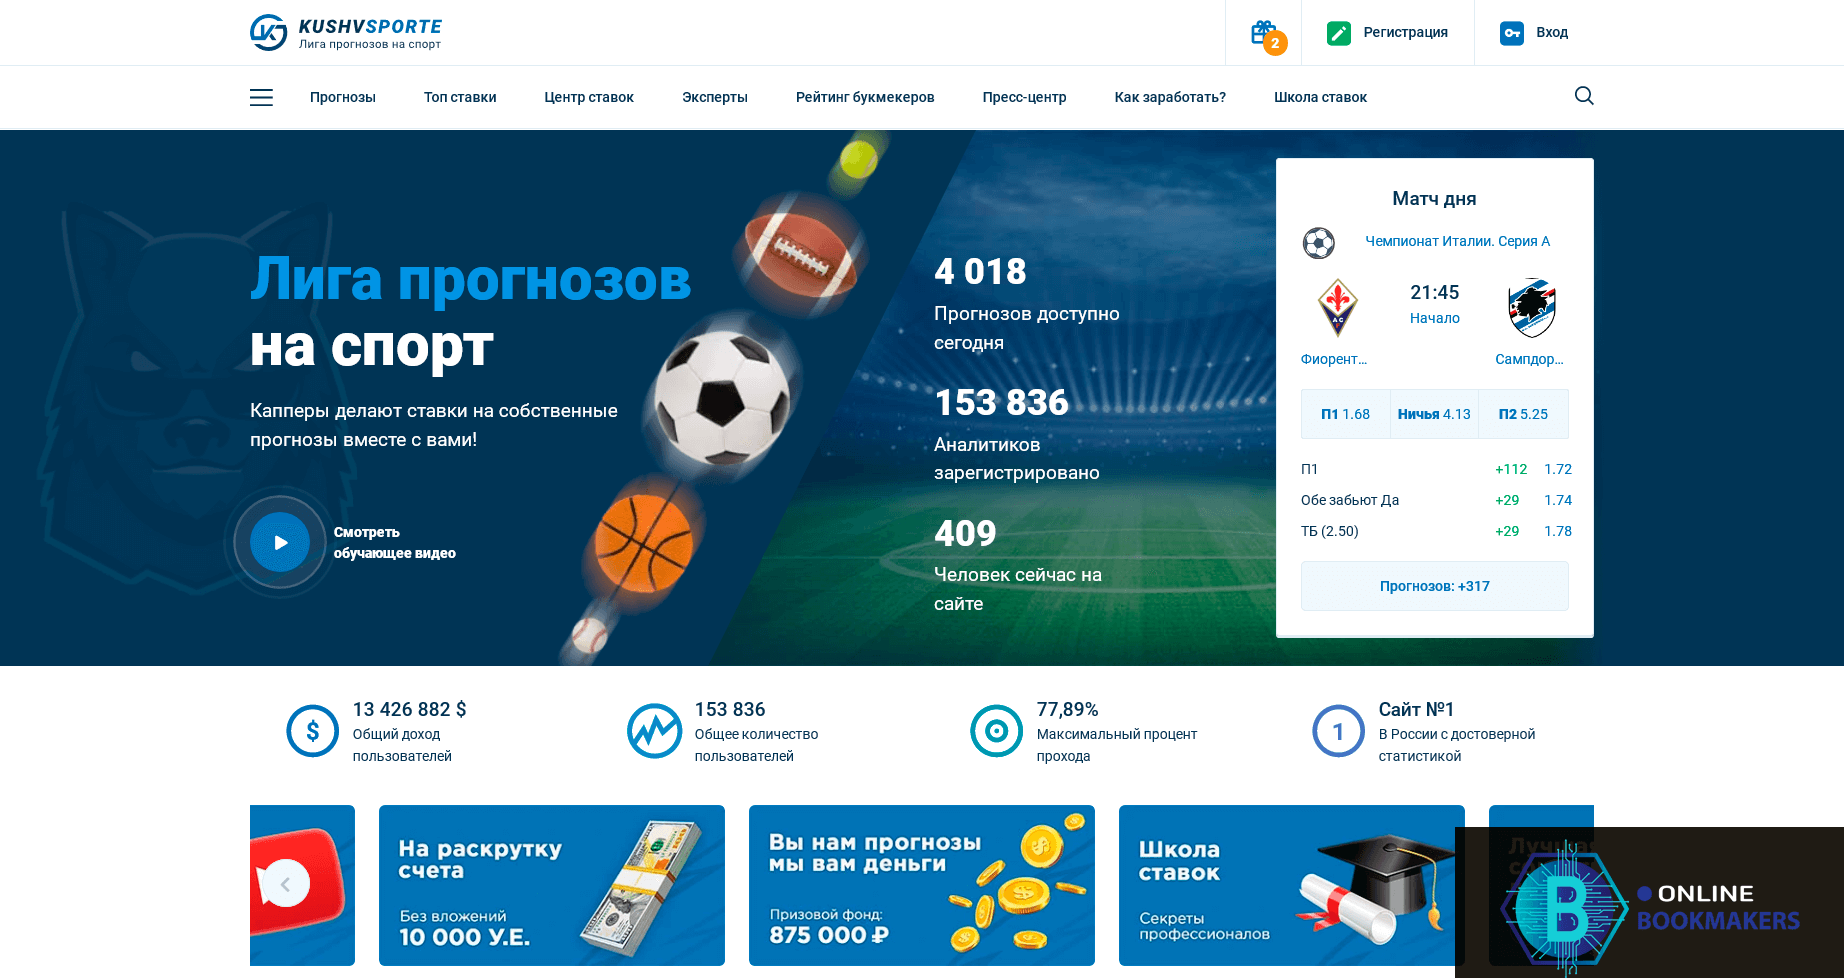 главная страница сайта kushvsporte.ru